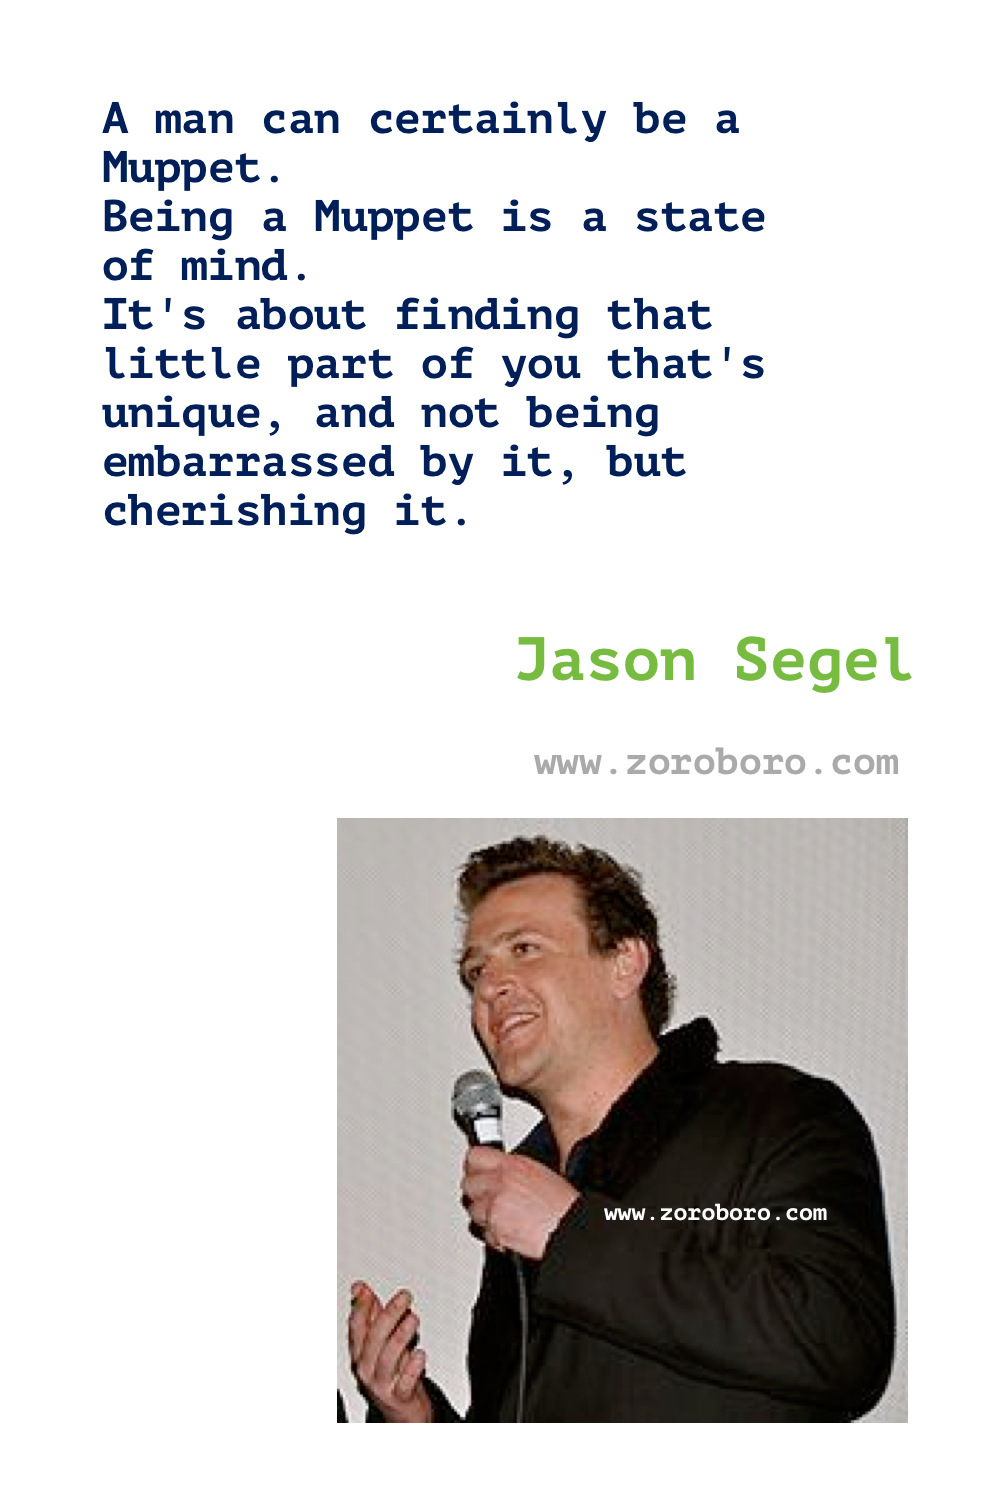 Jason Segel Quotes. Jason Segel Movies. Jason Segel Quotes. Jason Segel Actor & Writer. Jason Segel